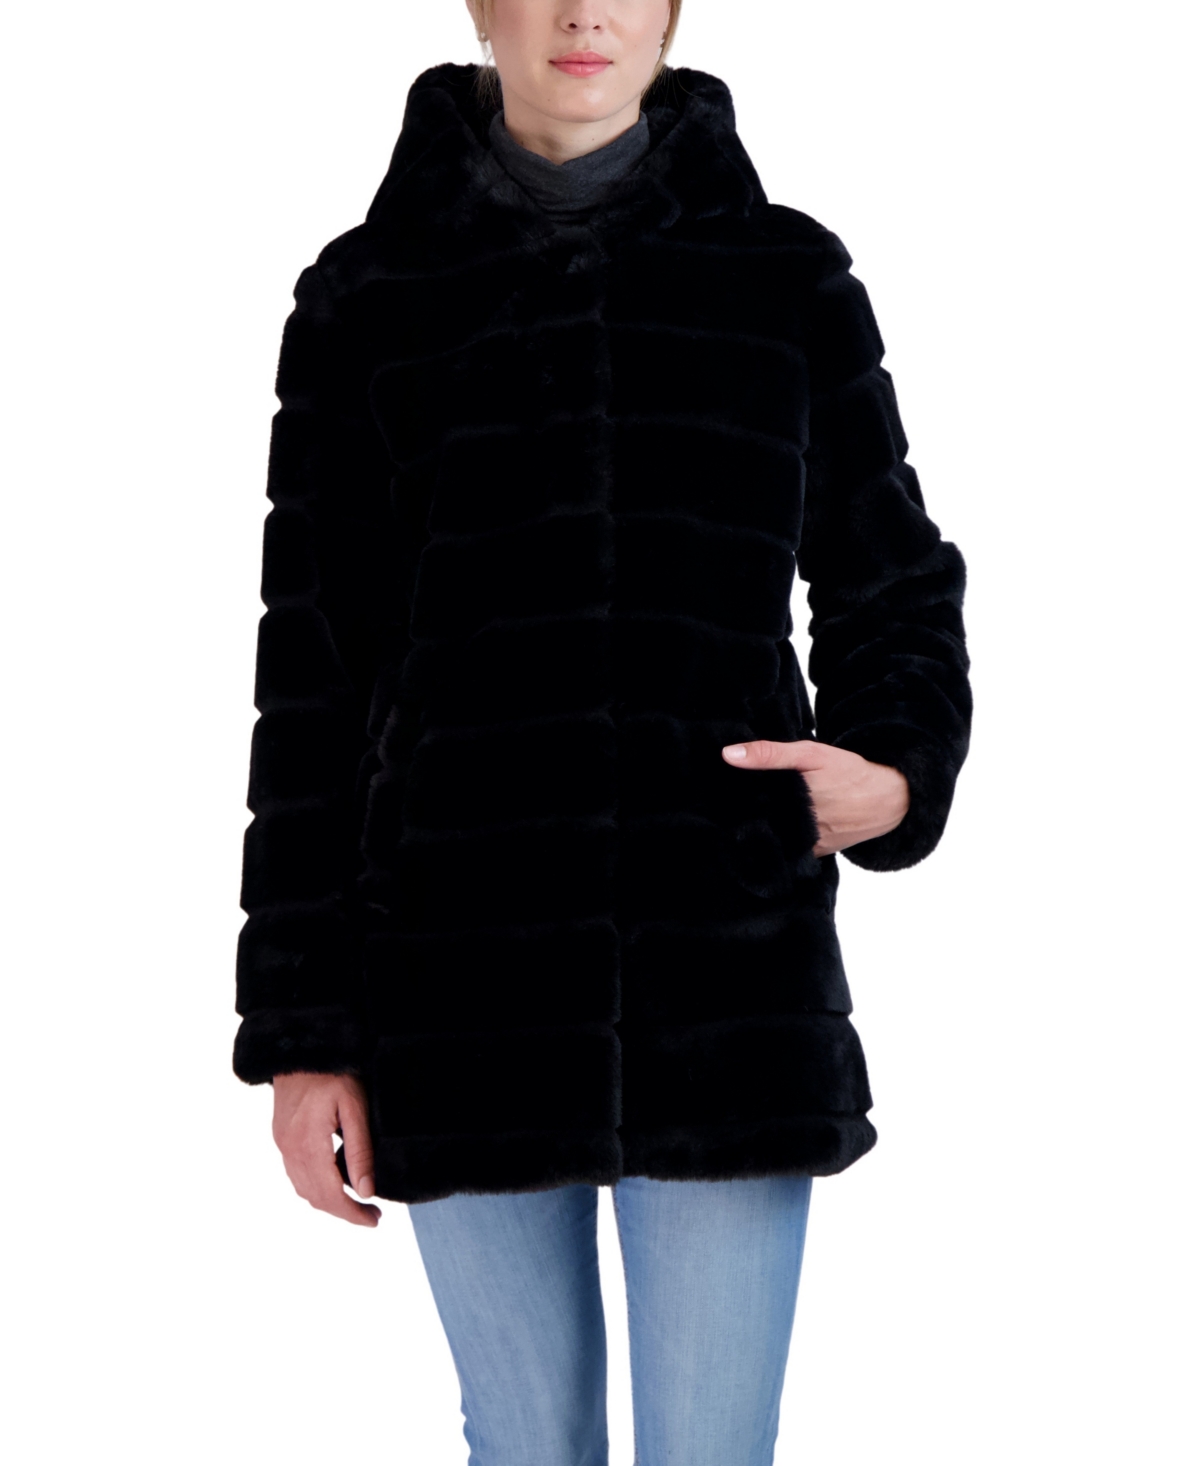 Women's Hooded Grooved Faux Fur Coat - Beige